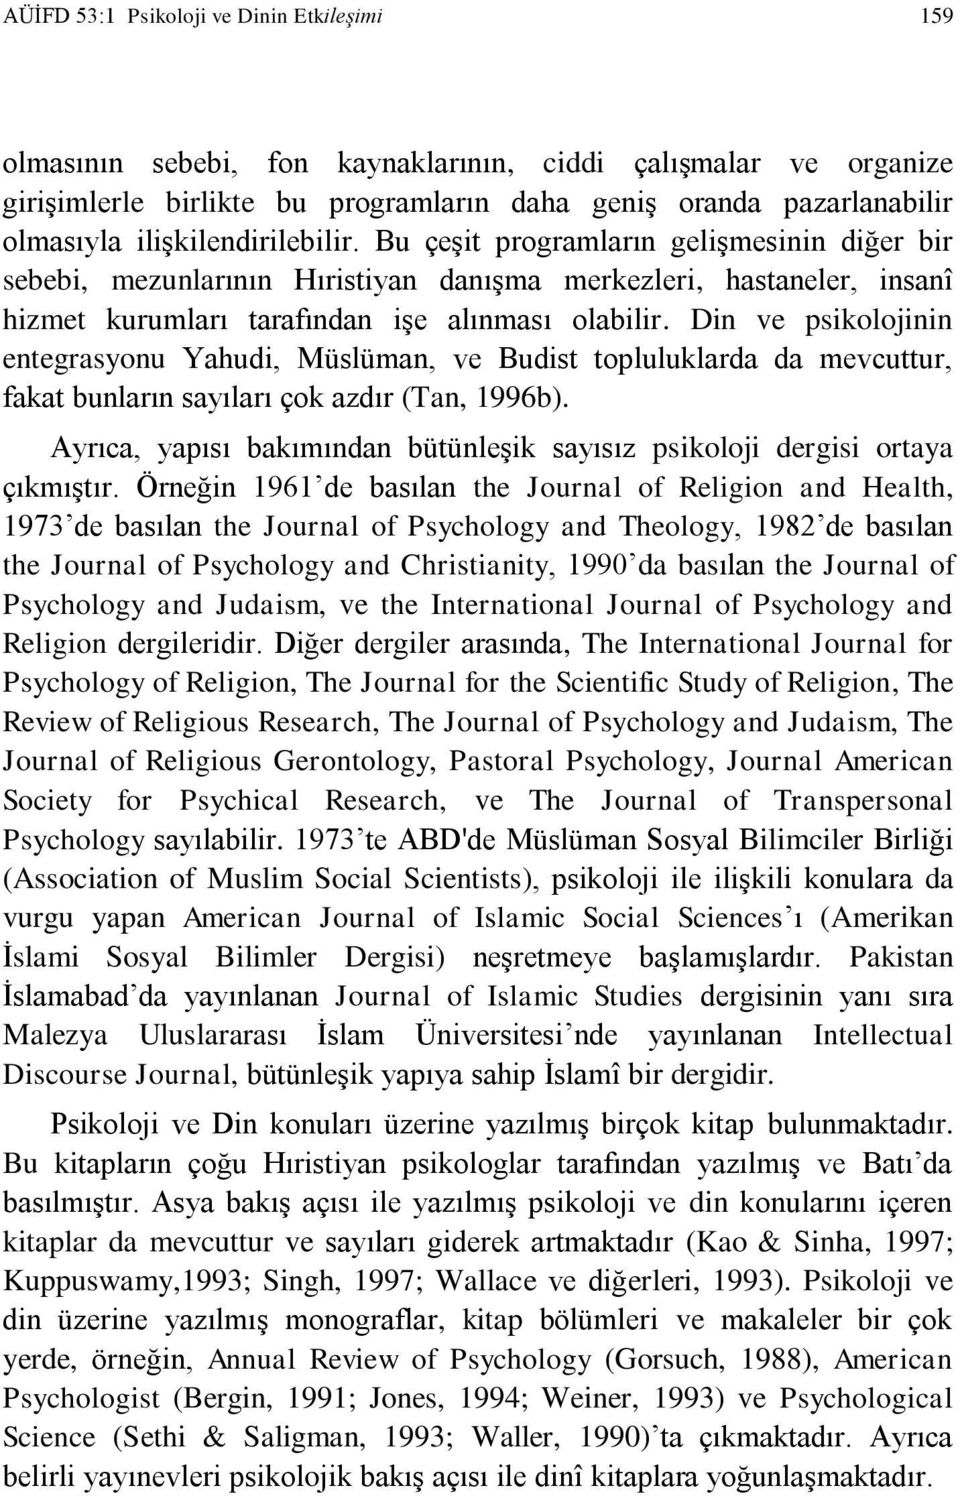 Din ve psikolojinin entegrasyonu Yahudi, Müslüman, ve Budist topluluklarda da mevcuttur, fakat bunların sayıları çok azdır (Tan, 1996b).